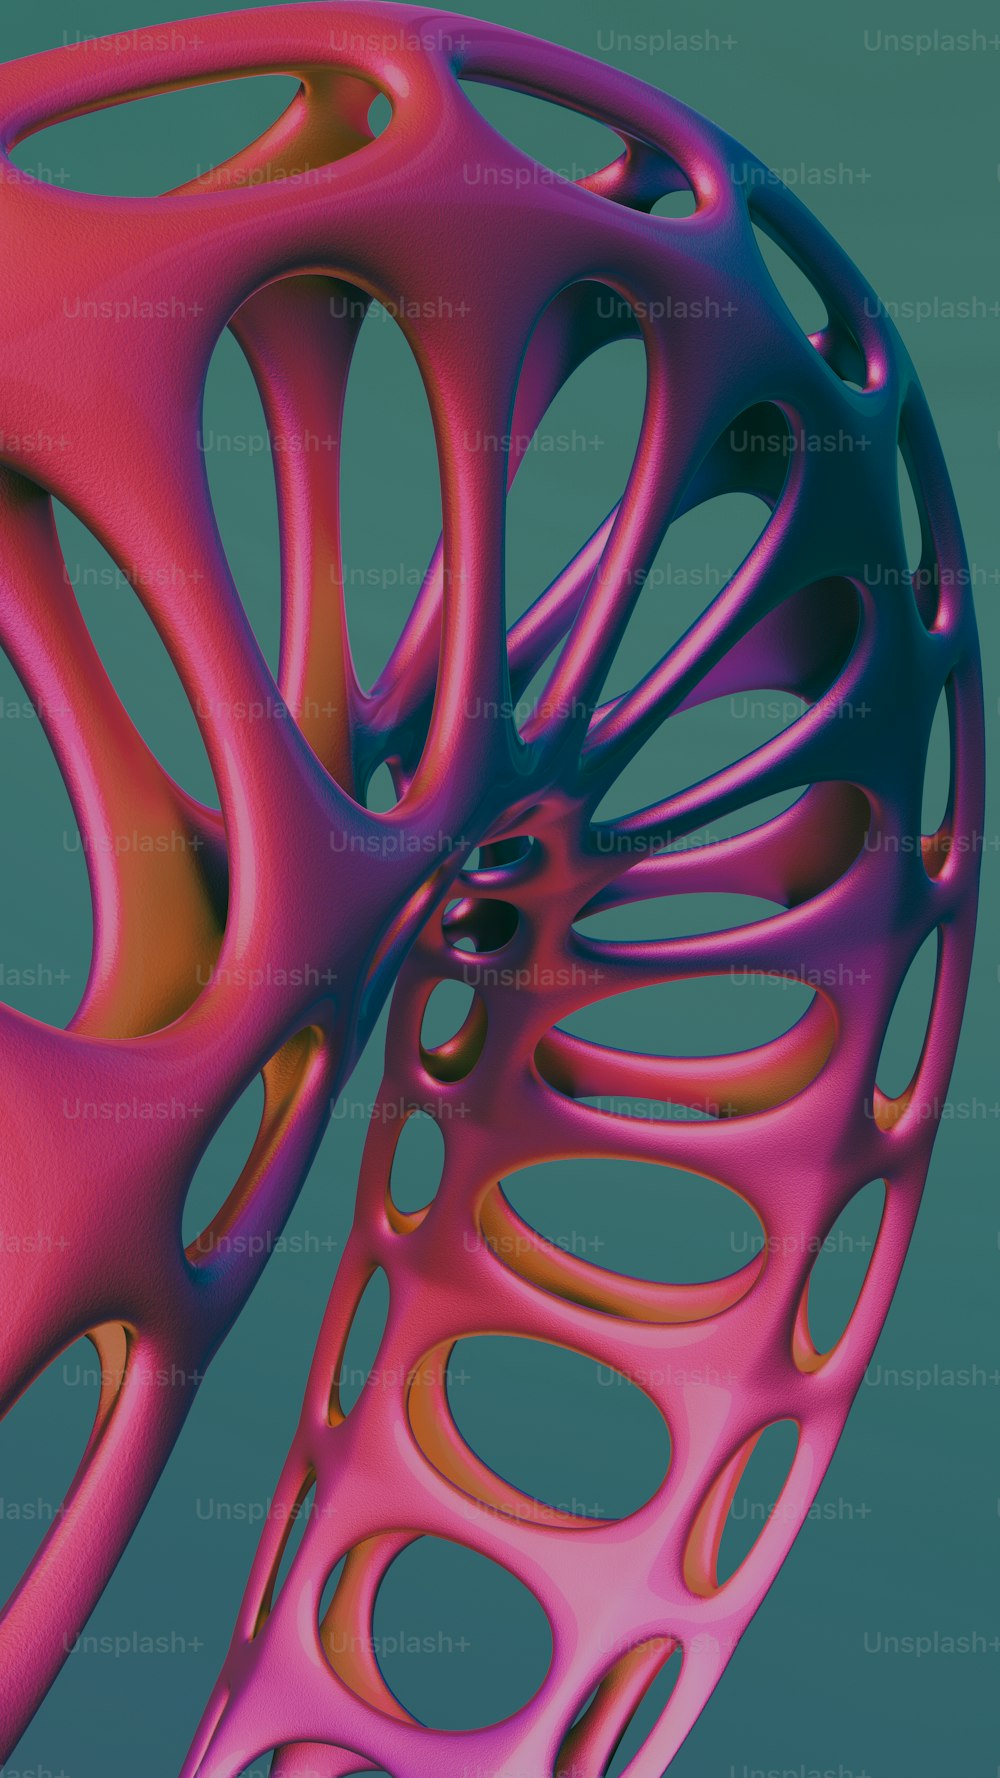 uma imagem 3D de um objeto rosa e azul